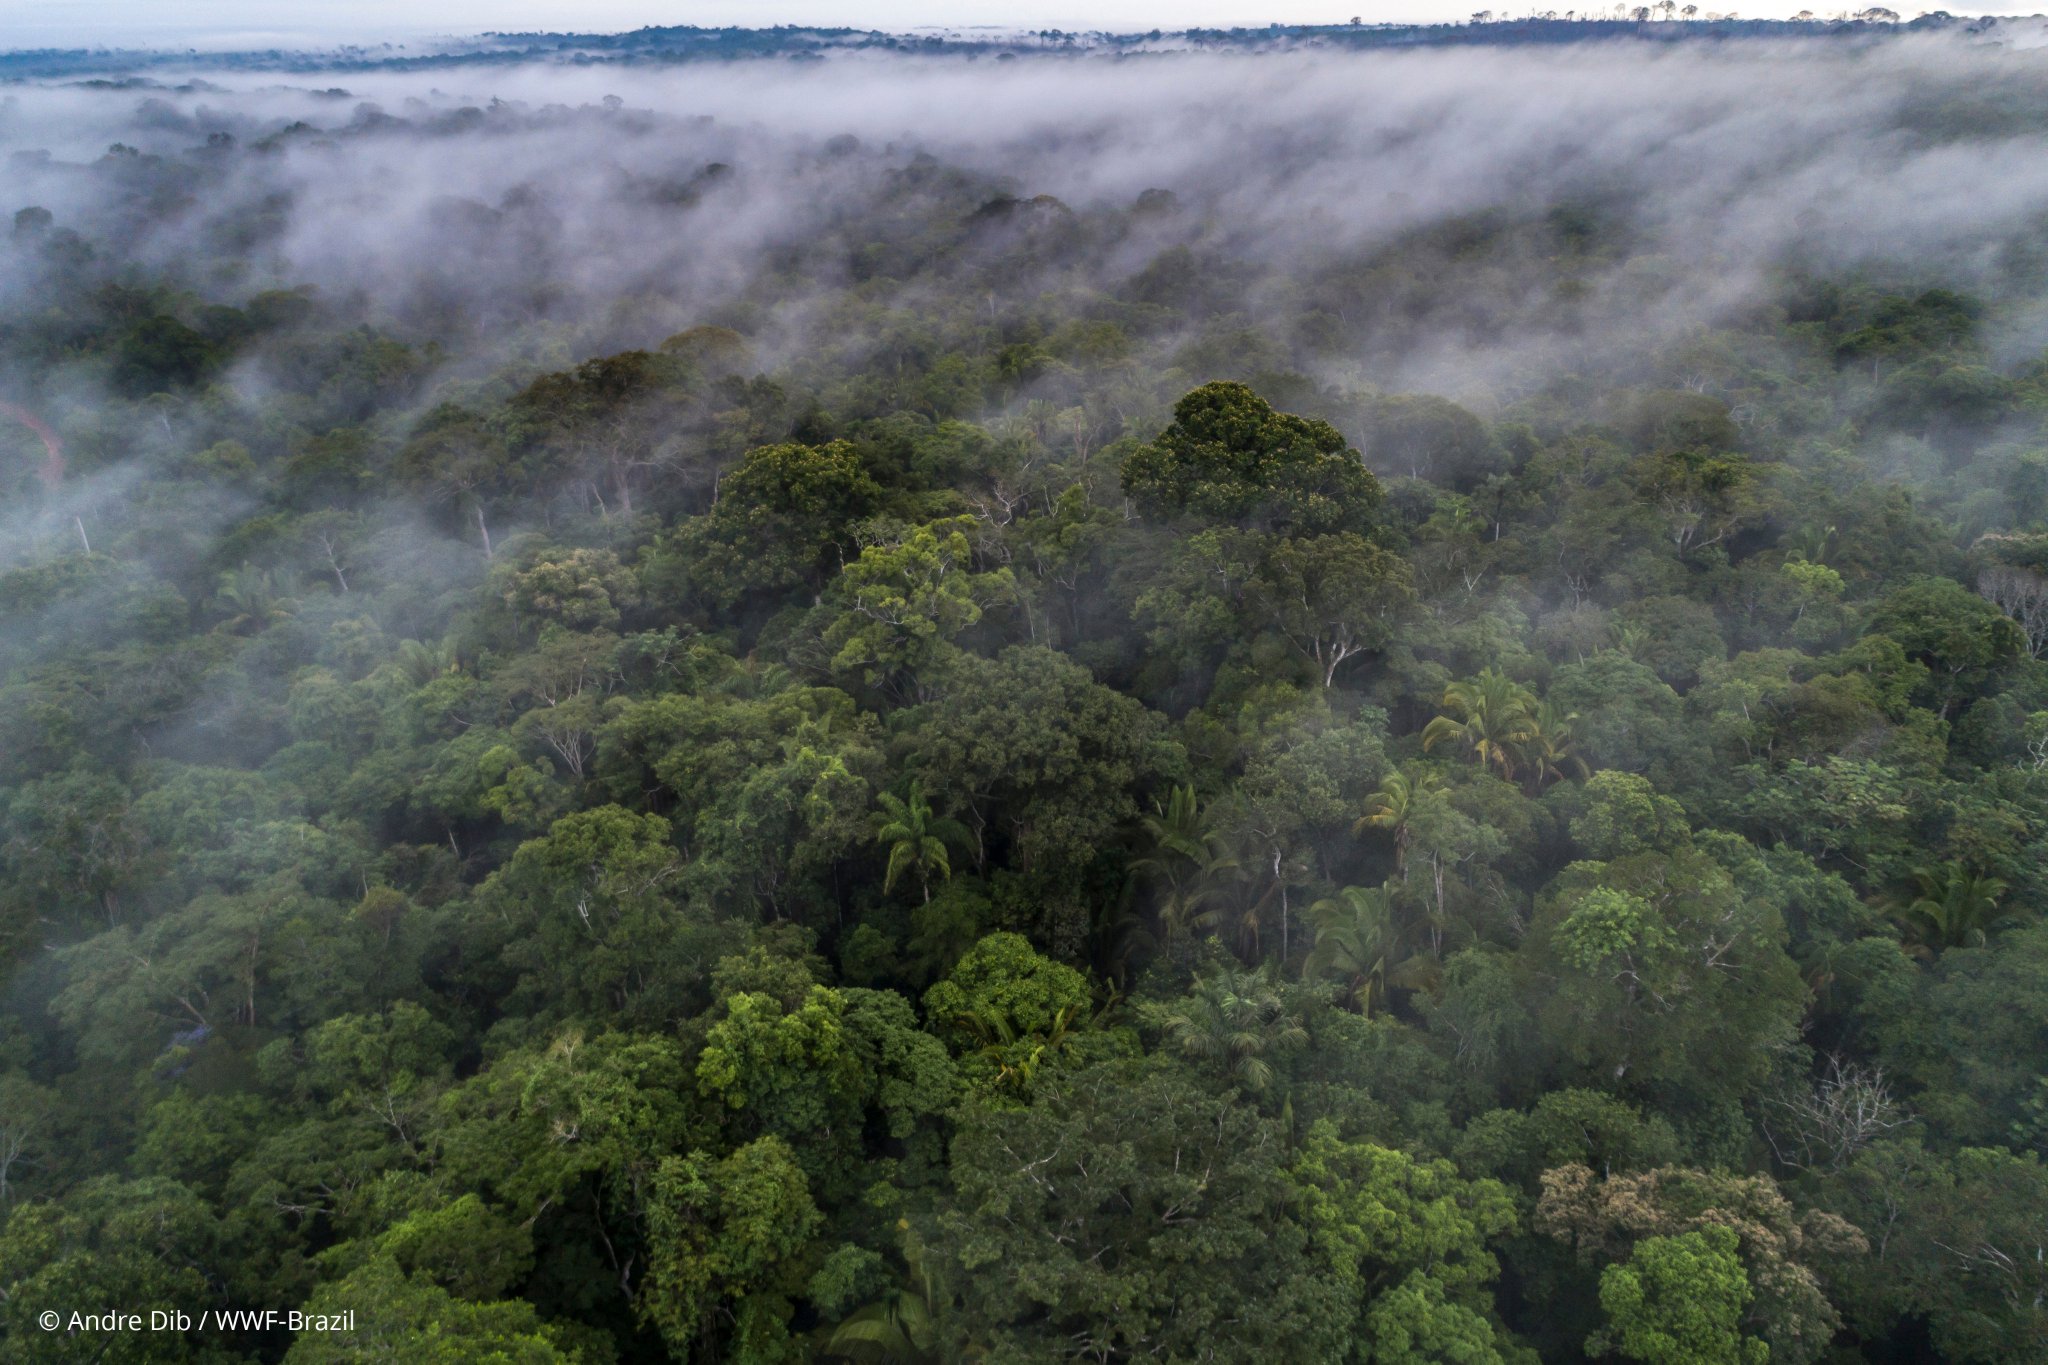 Nuevo informe de WWF demuestra un fuerte vínculo científico entre los bosques y la salud humana